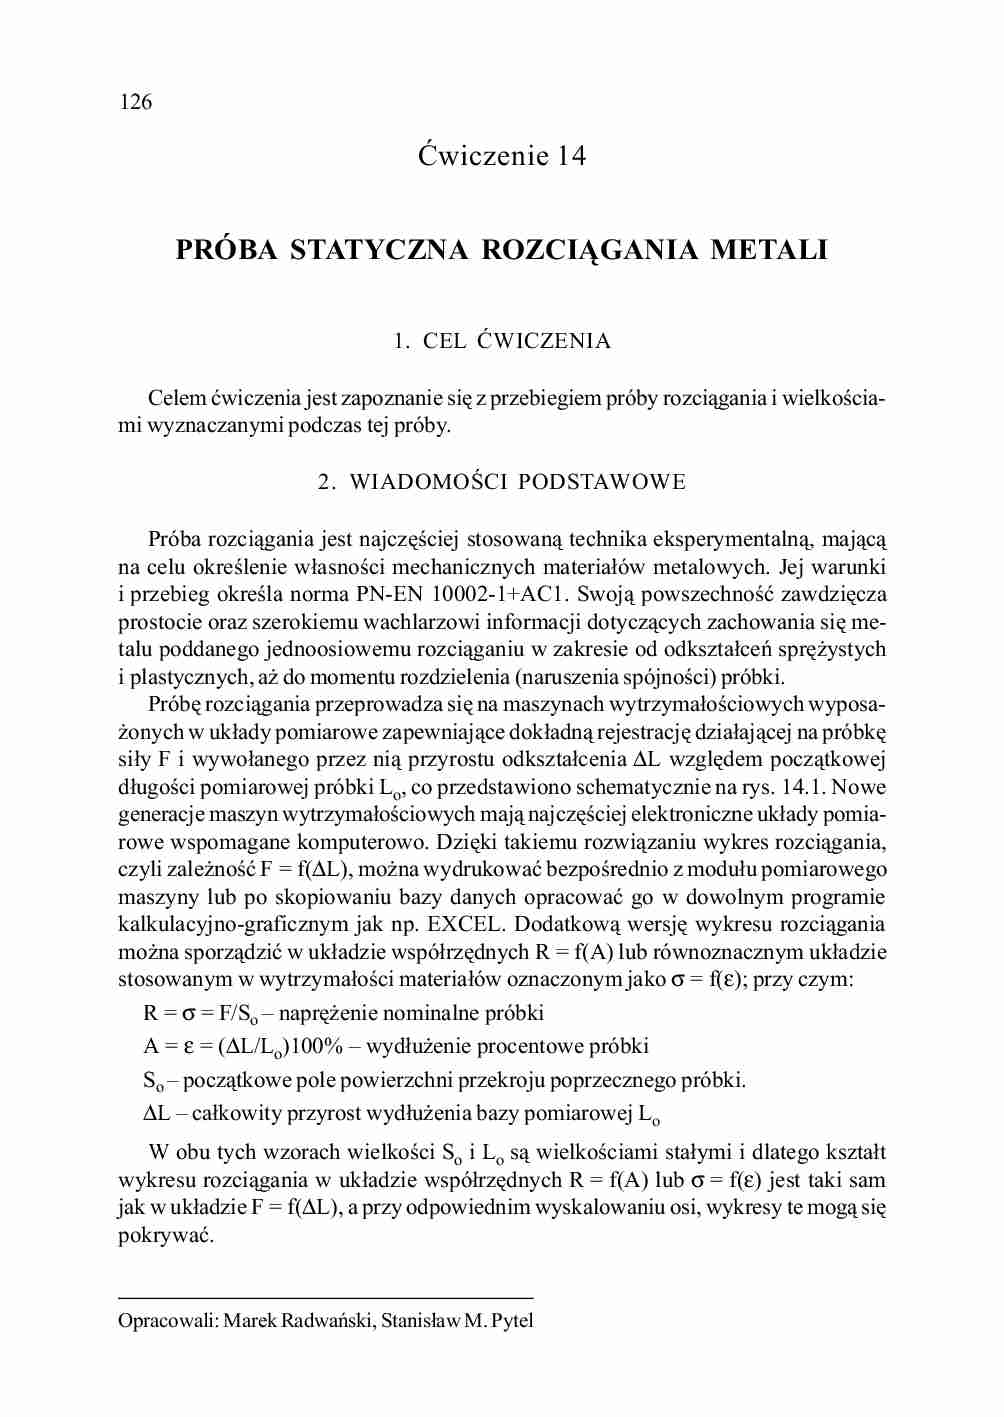 Próba statyczna rozciągania metali - ćwiczenia - strona 1